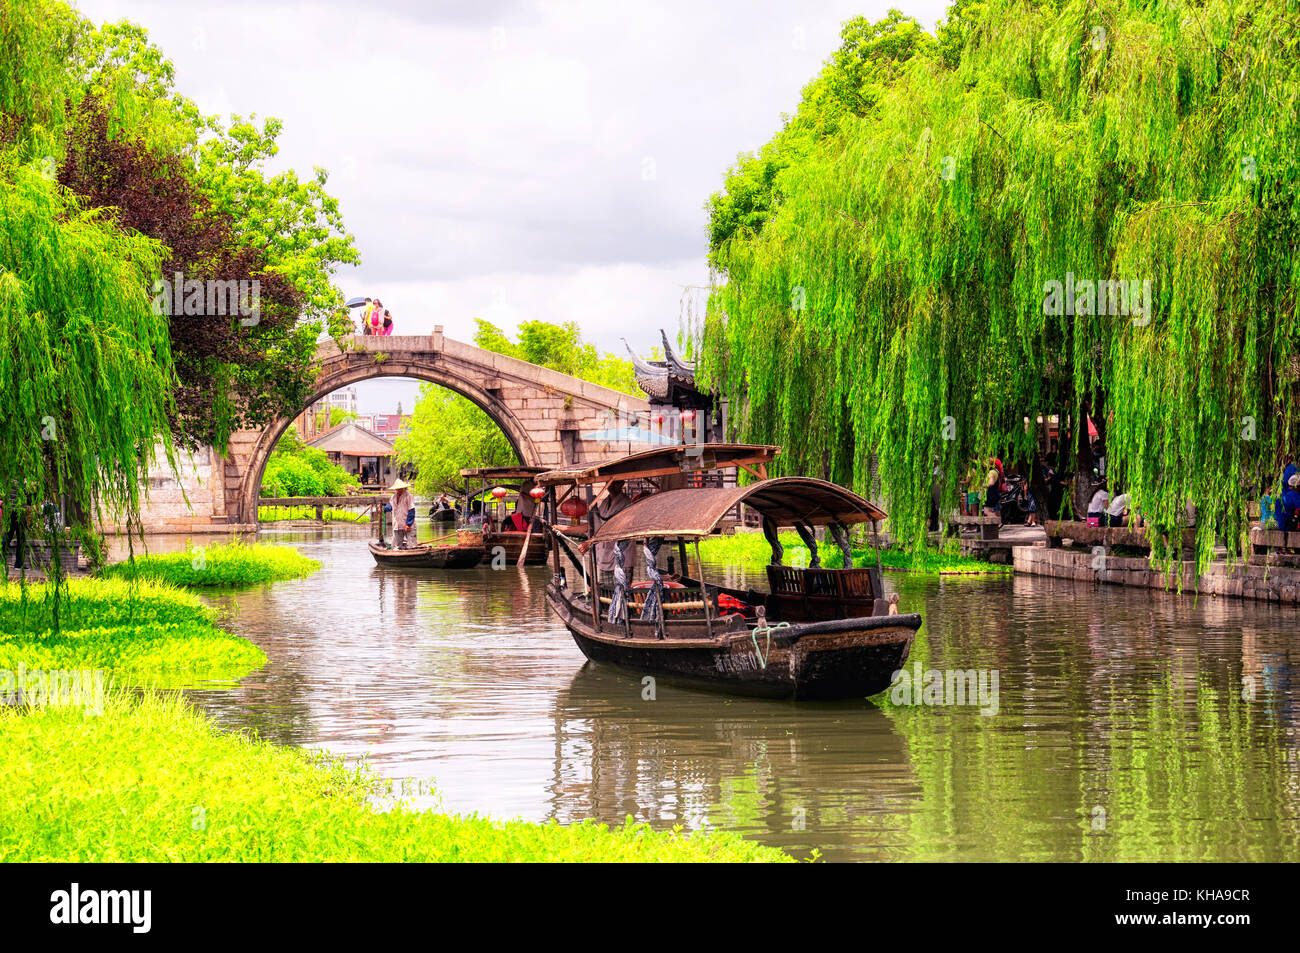 8 août 2015, la ville de xitang. chine. pont de Wolong et bateaux de touristes sur les canaux d'eau de xitang situé dans la vieille ville à jiashan county à Jiaxing c Banque D'Images